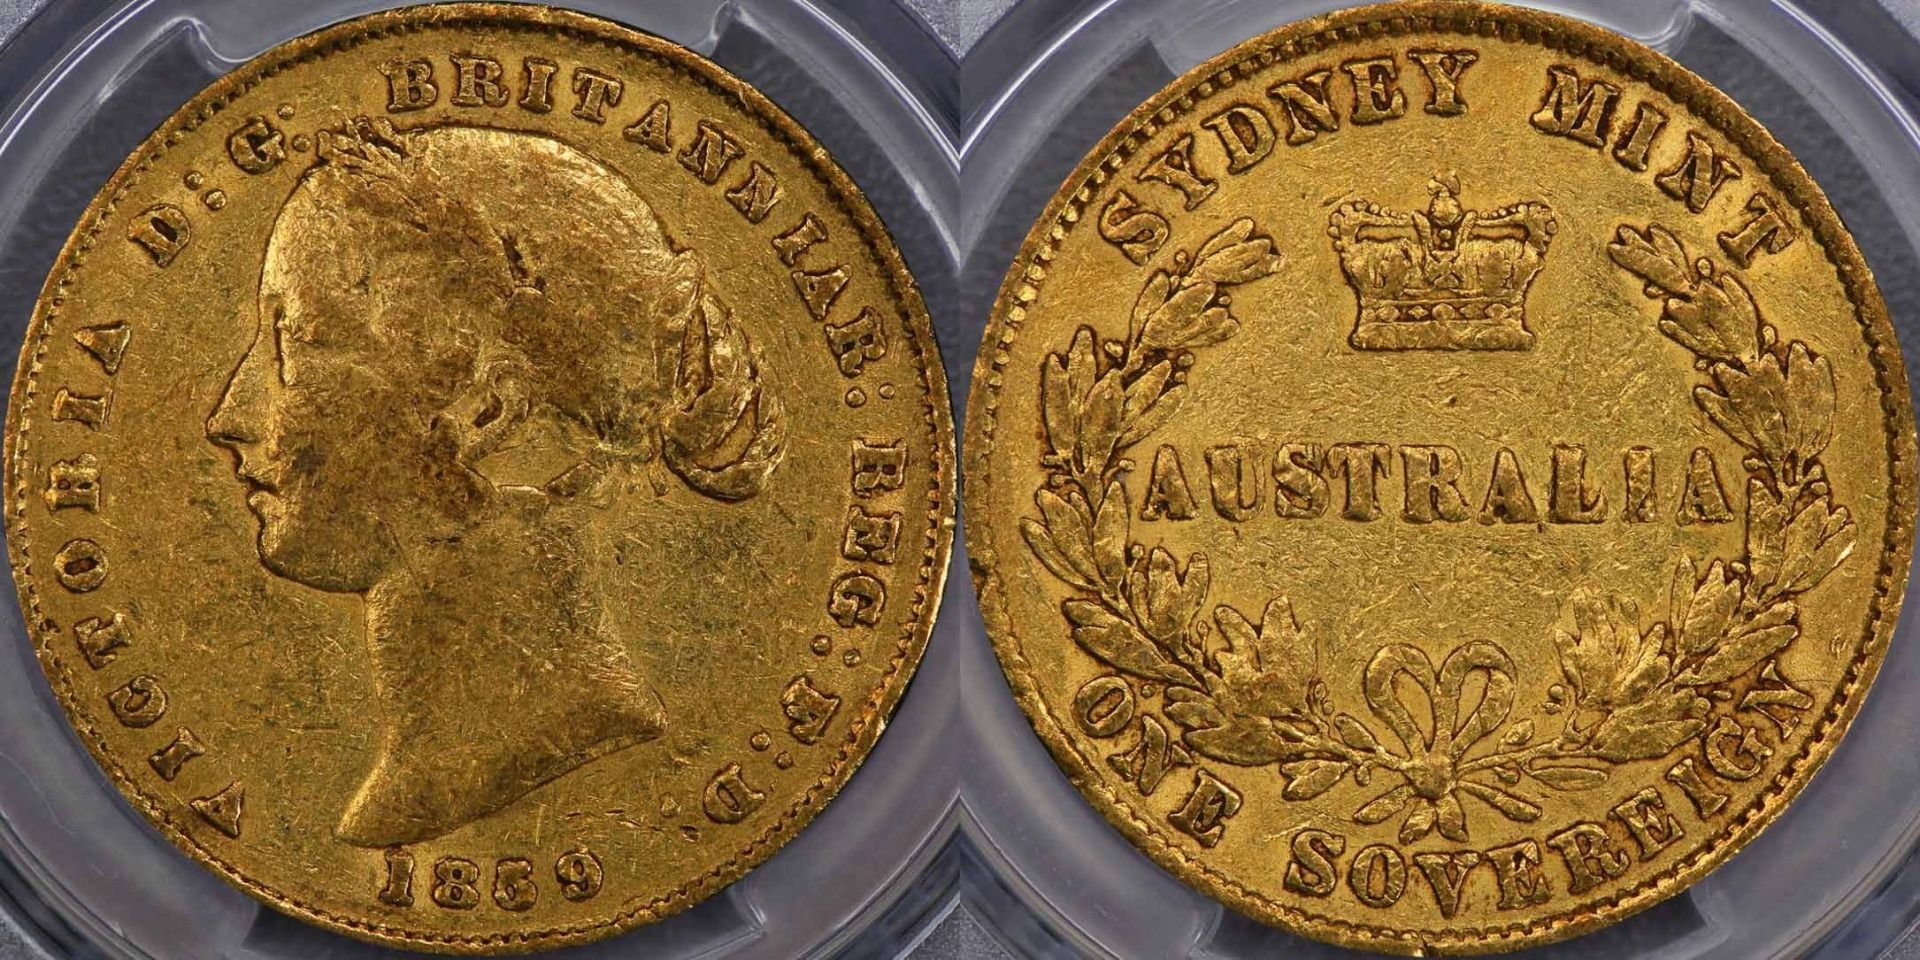 Sydney Mint sovereign